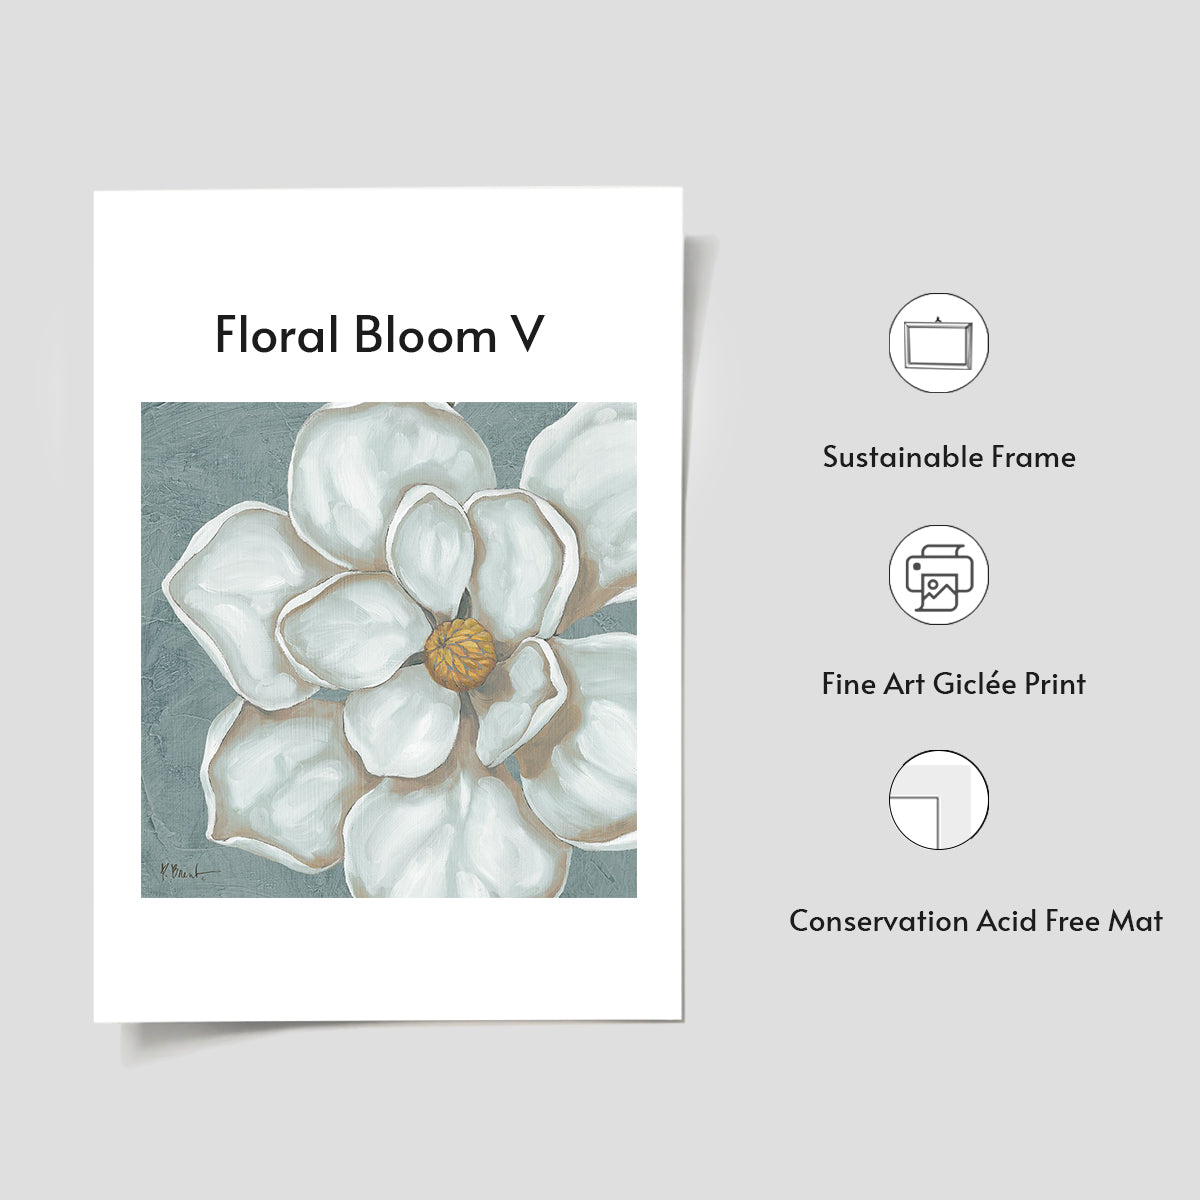 Floral Bloom V